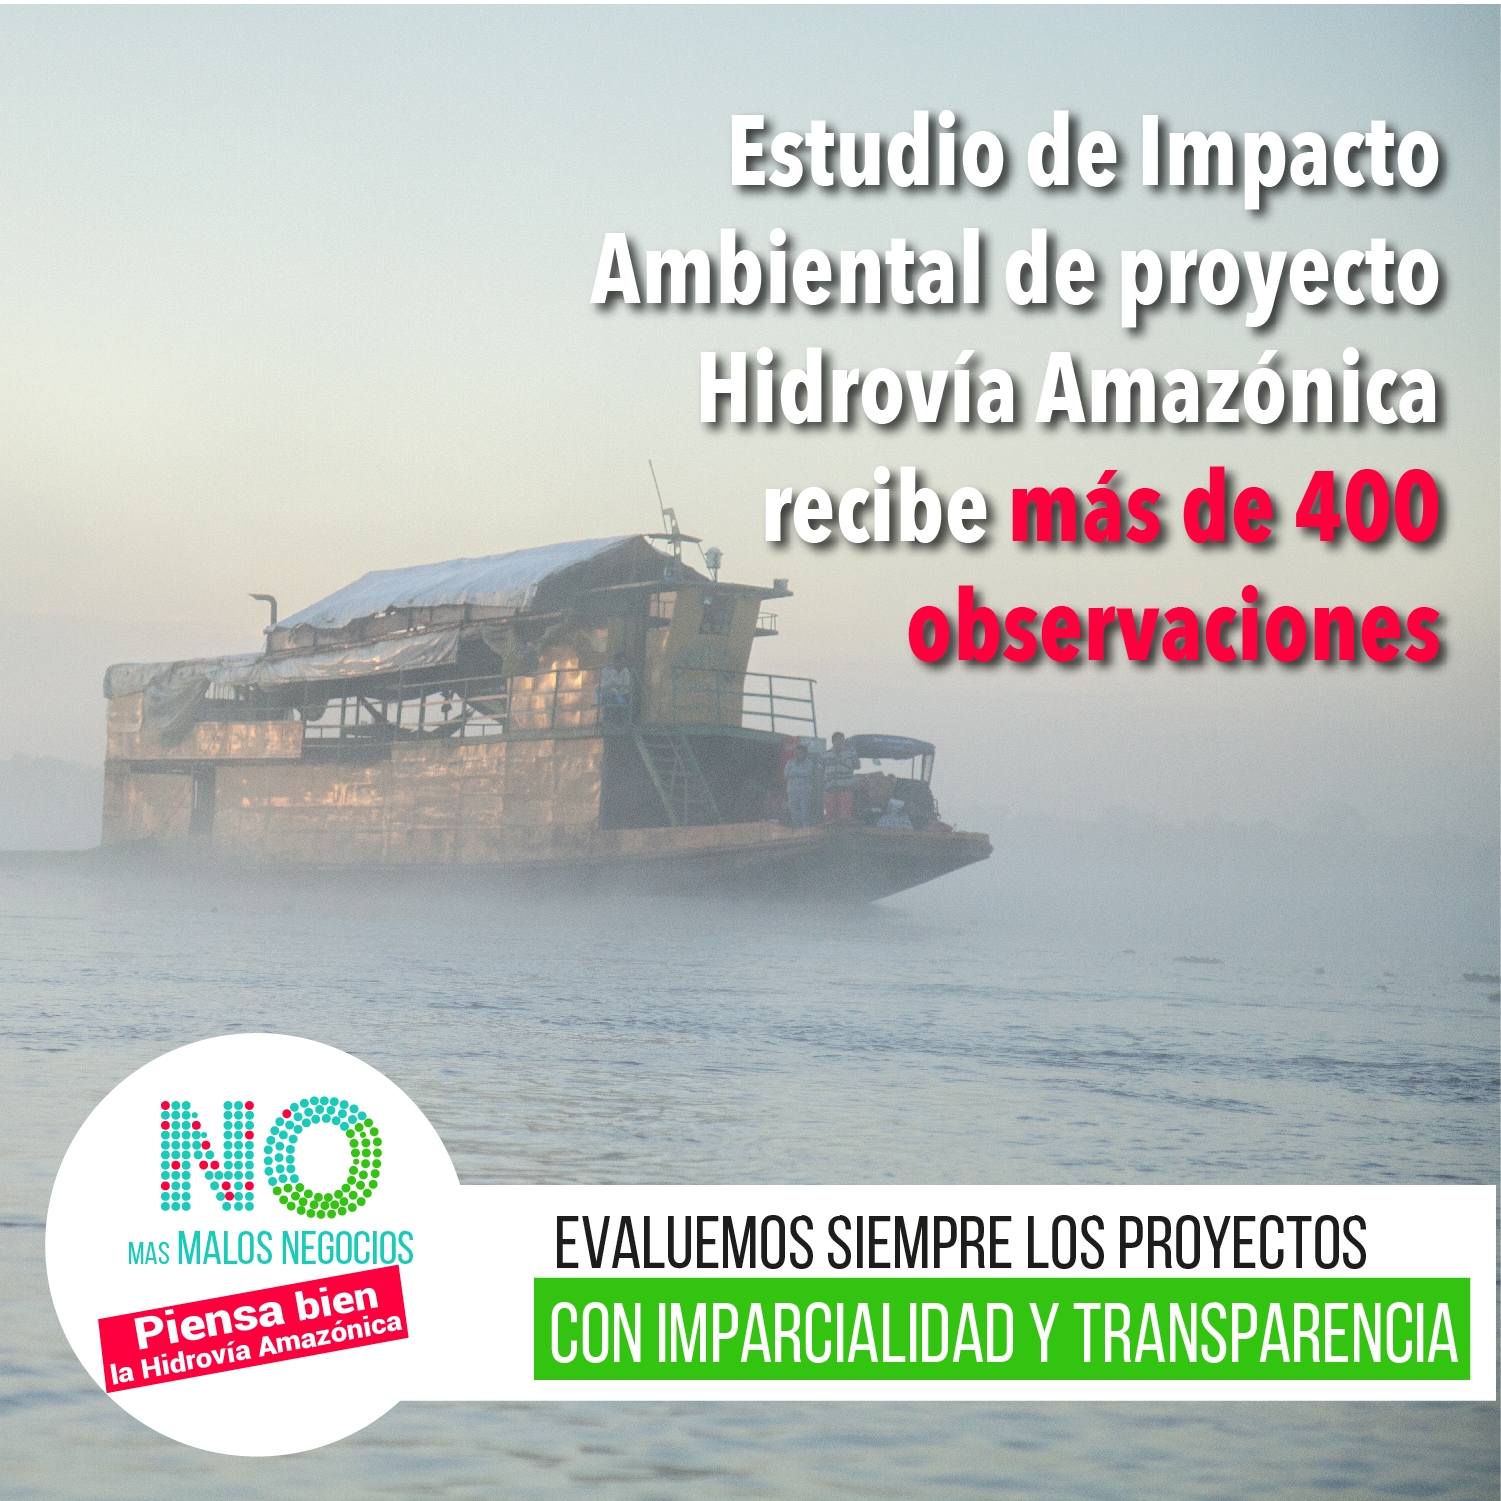 Estudio de Impacto Ambiental de proyecto Hidrovía Amazónica recibe más de 400 observaciones